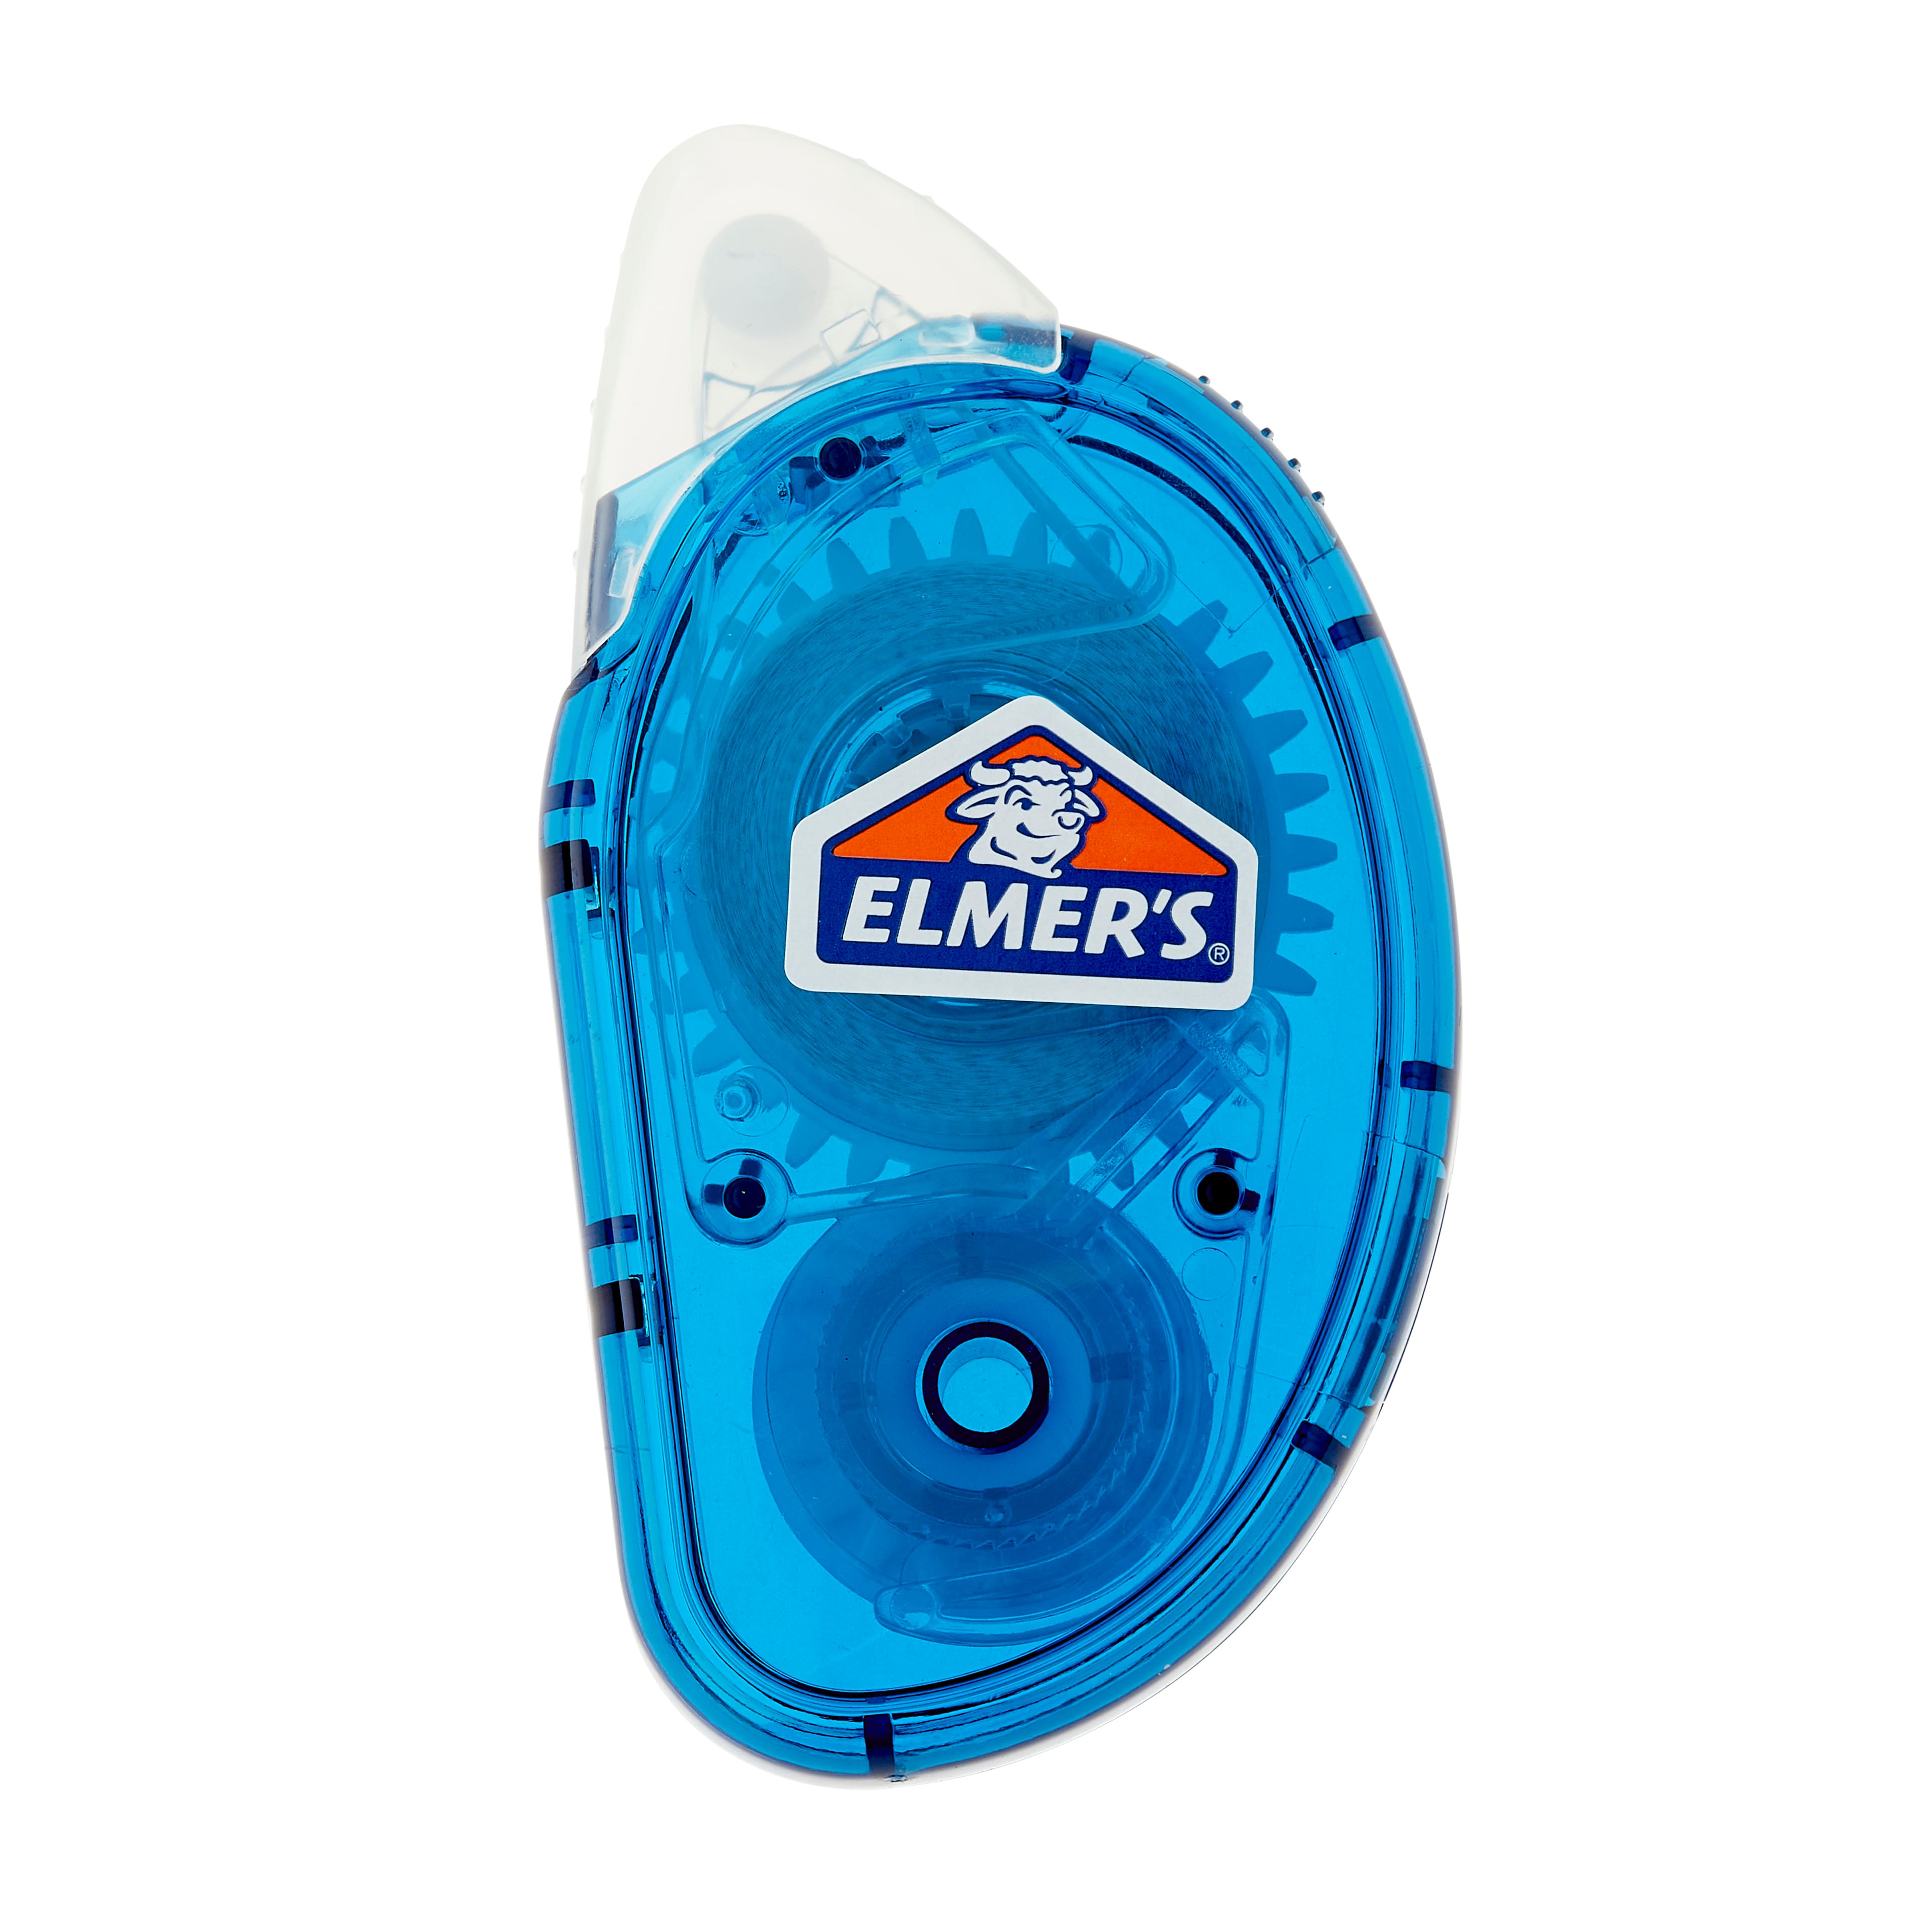 How to refill elmers tape runner? 